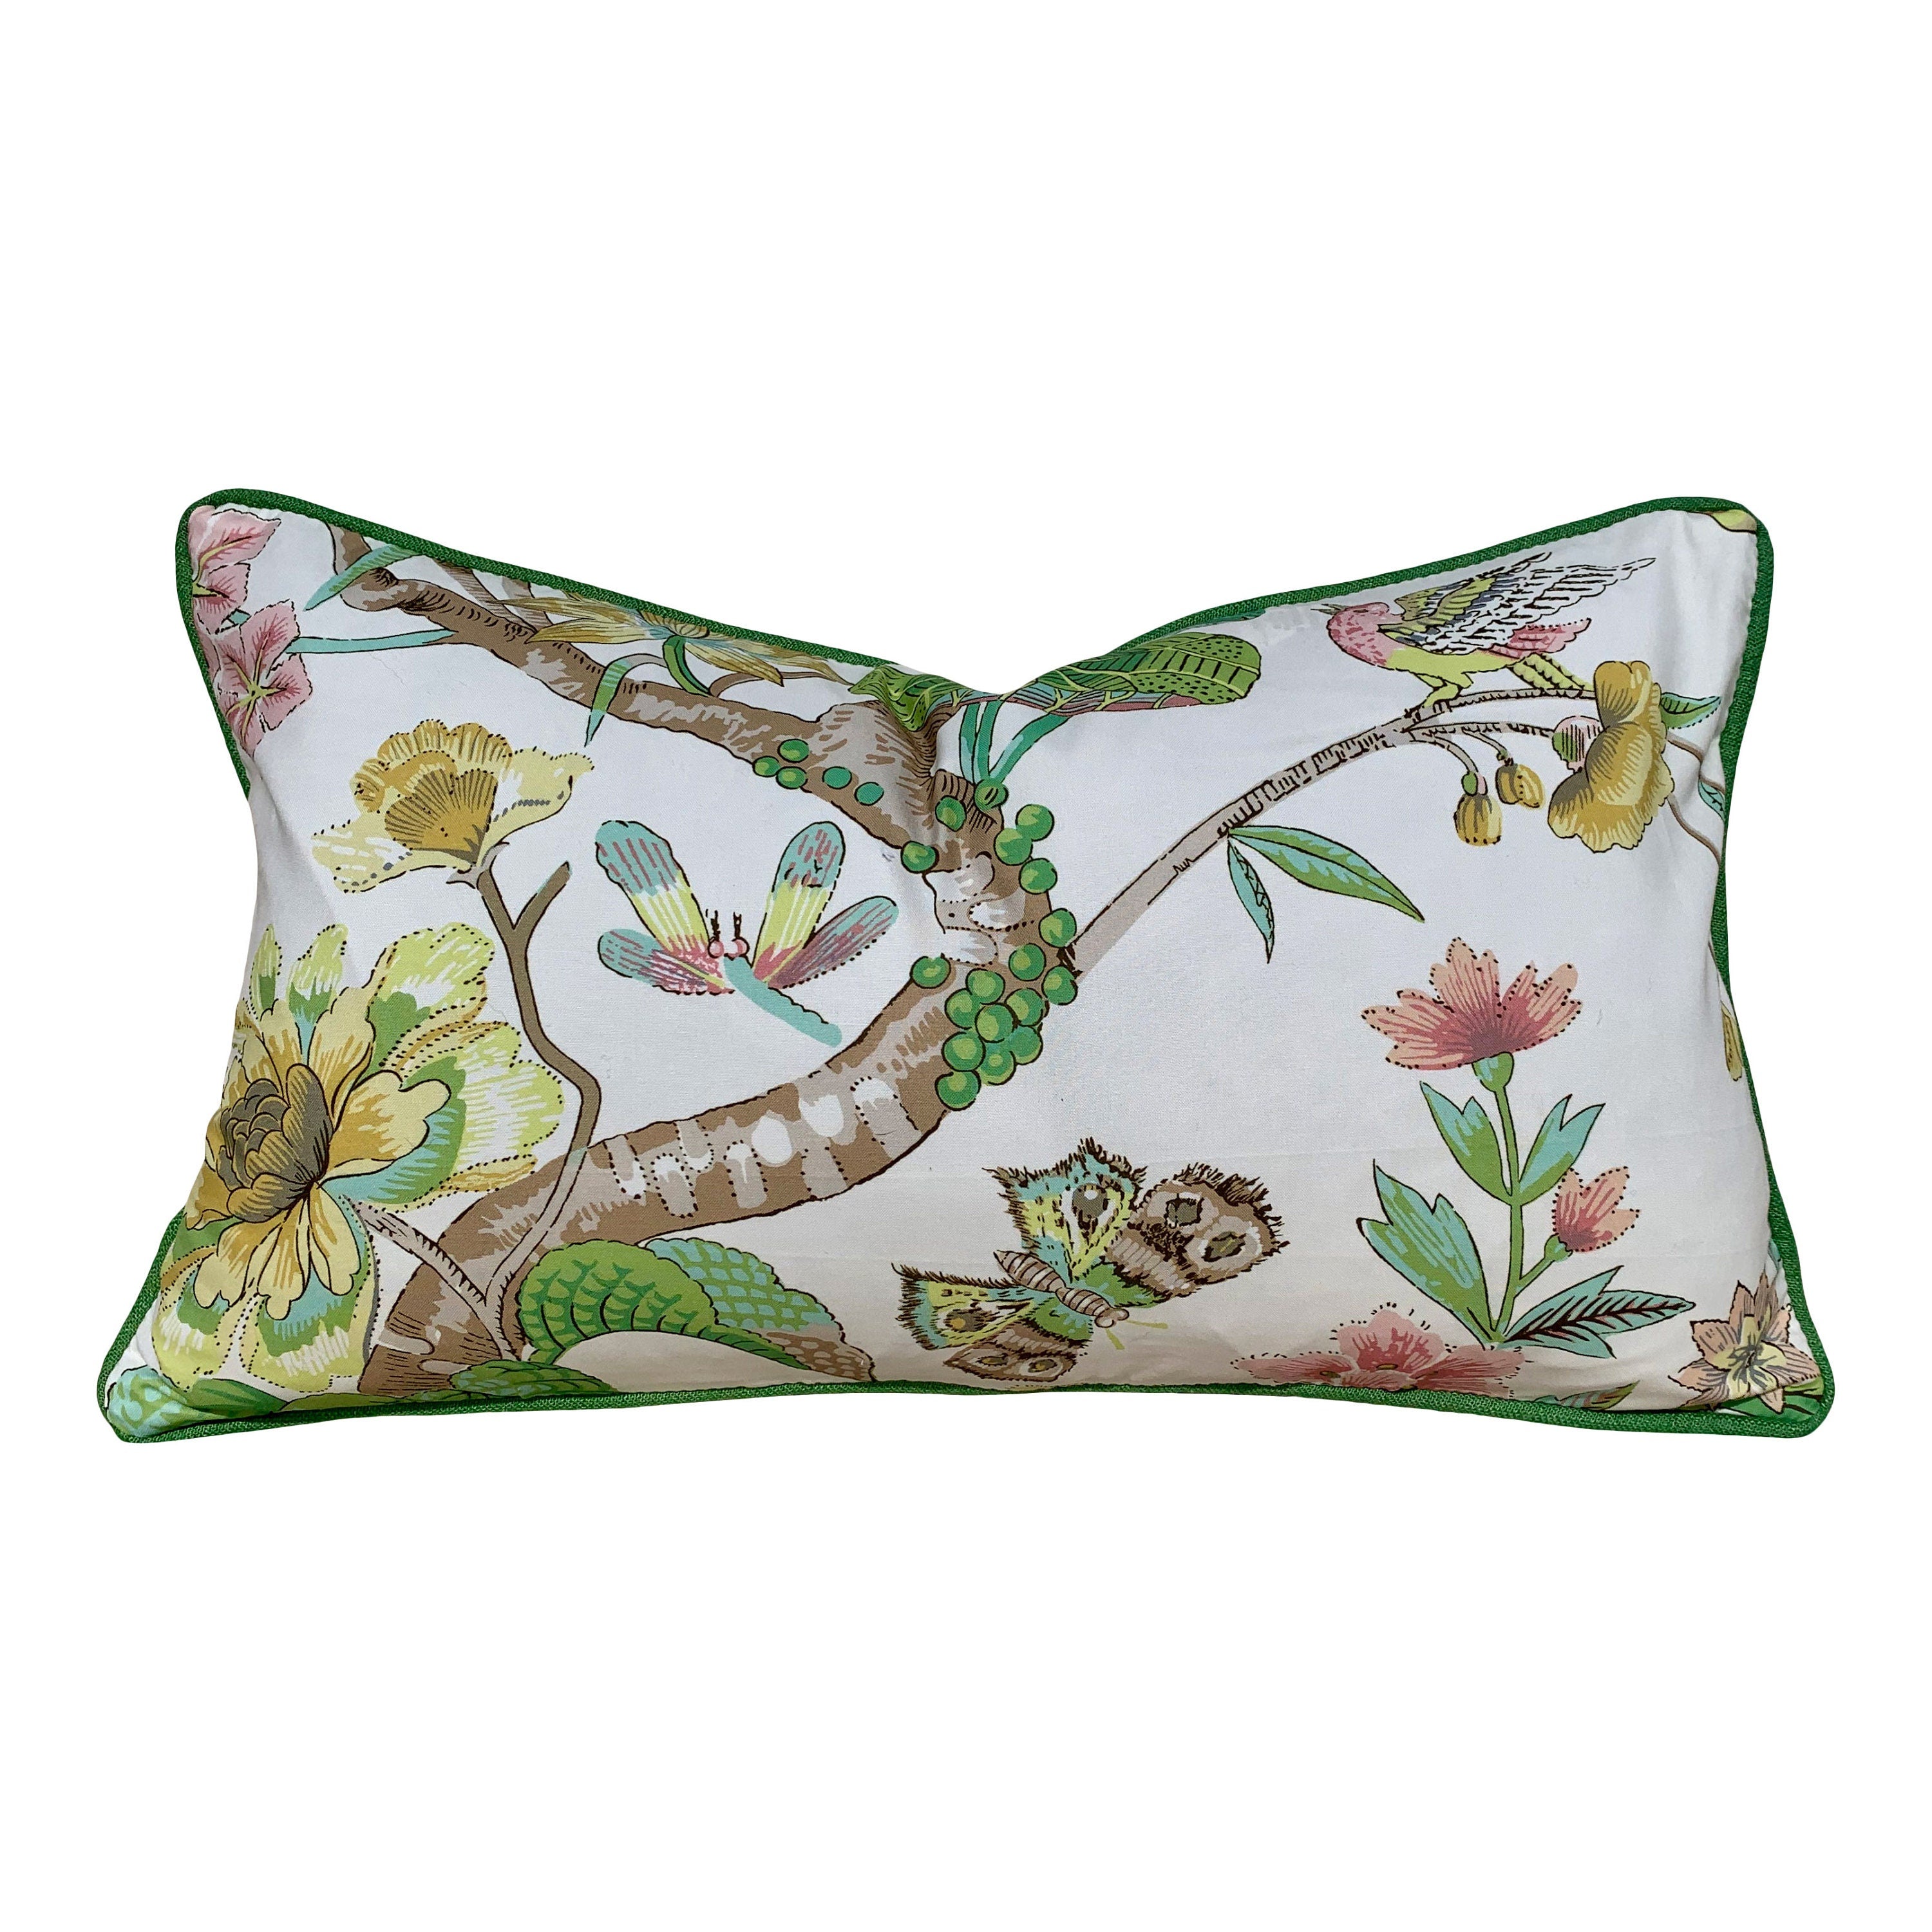 Schumacher Cranley Garden Pillow. Floral Lumbar Pillow, Green Yellow Pillow, Euro Sham 26"x26", Fauna Pillow Cover